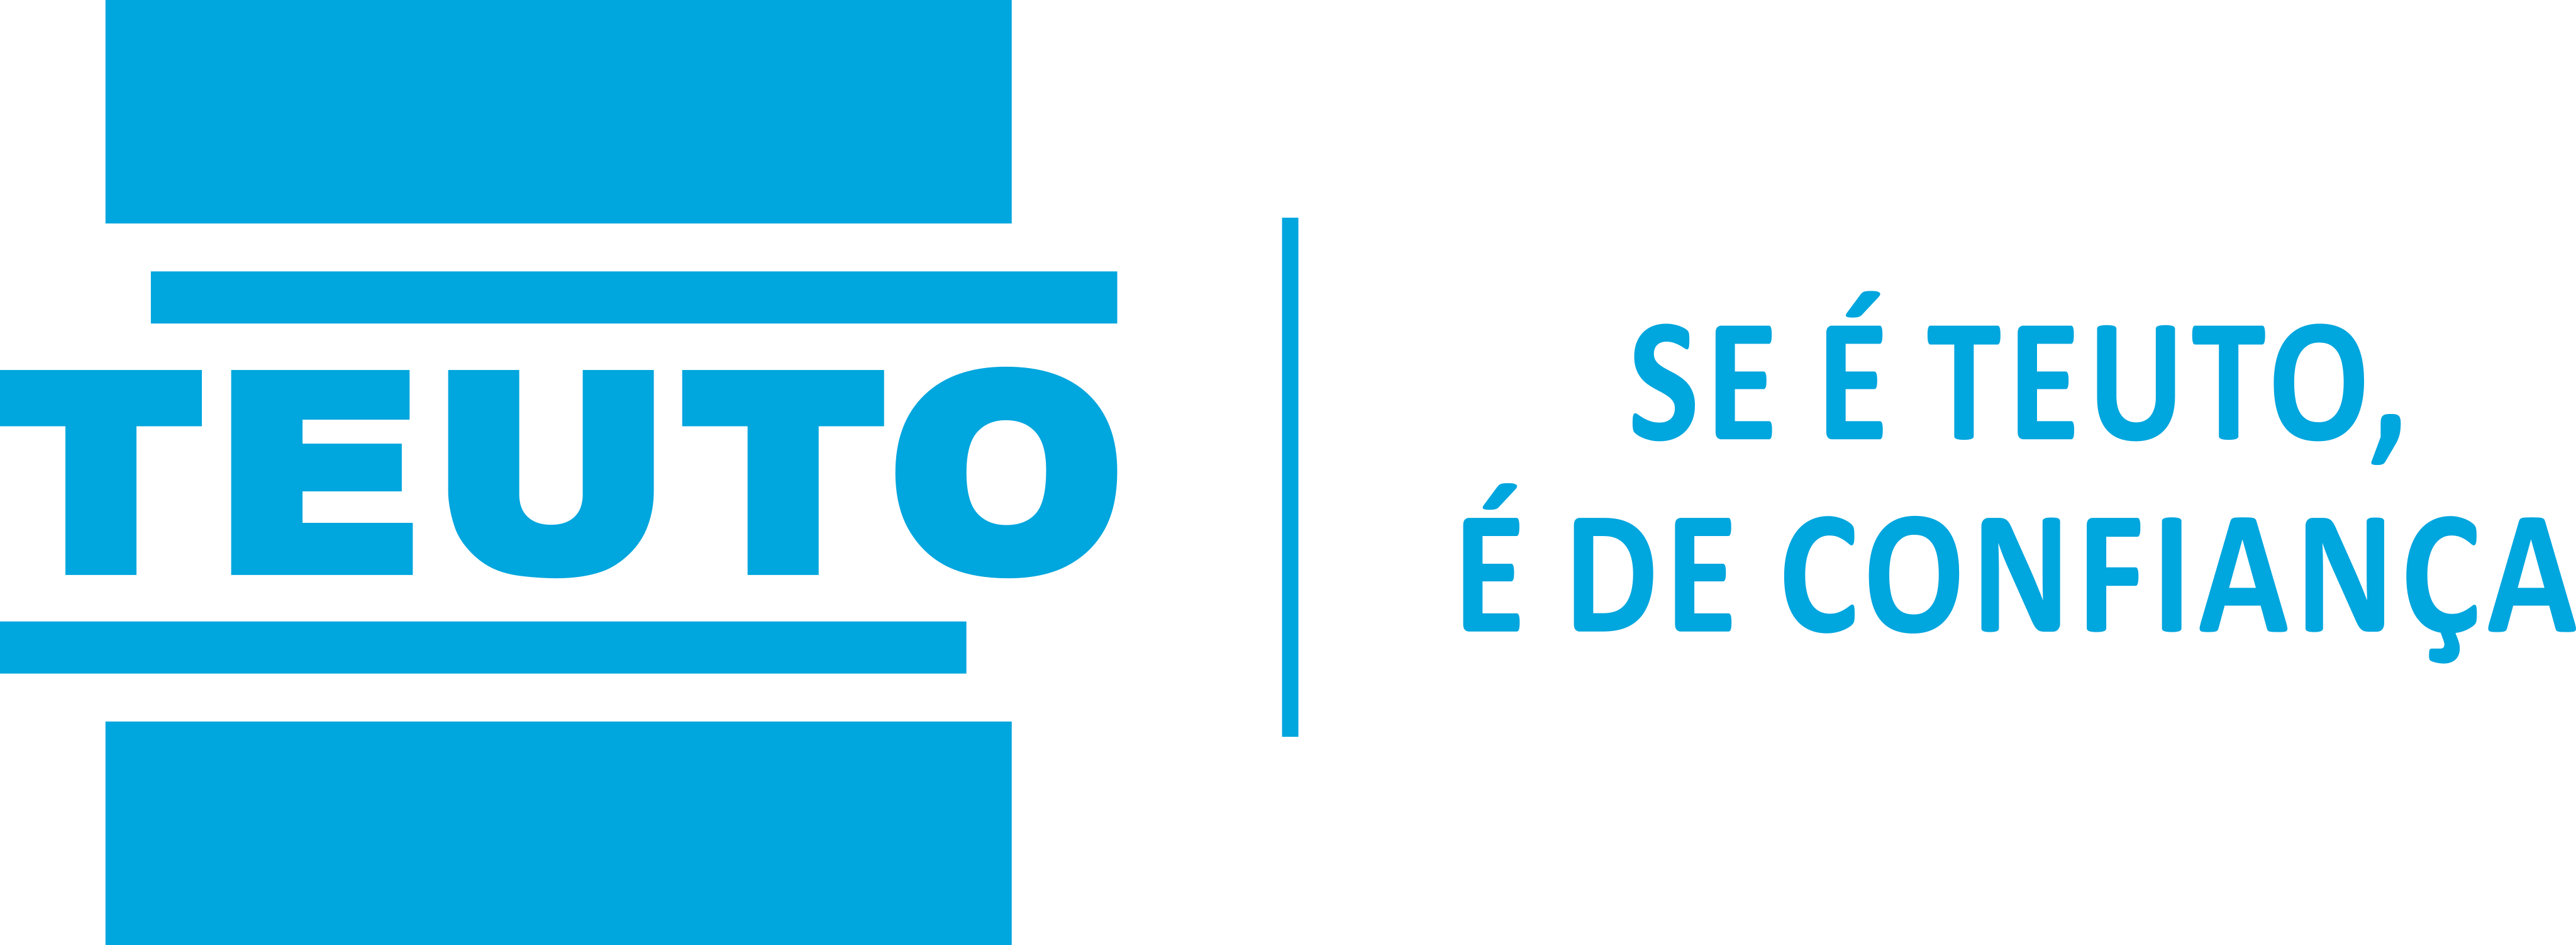 Teuto Logo.